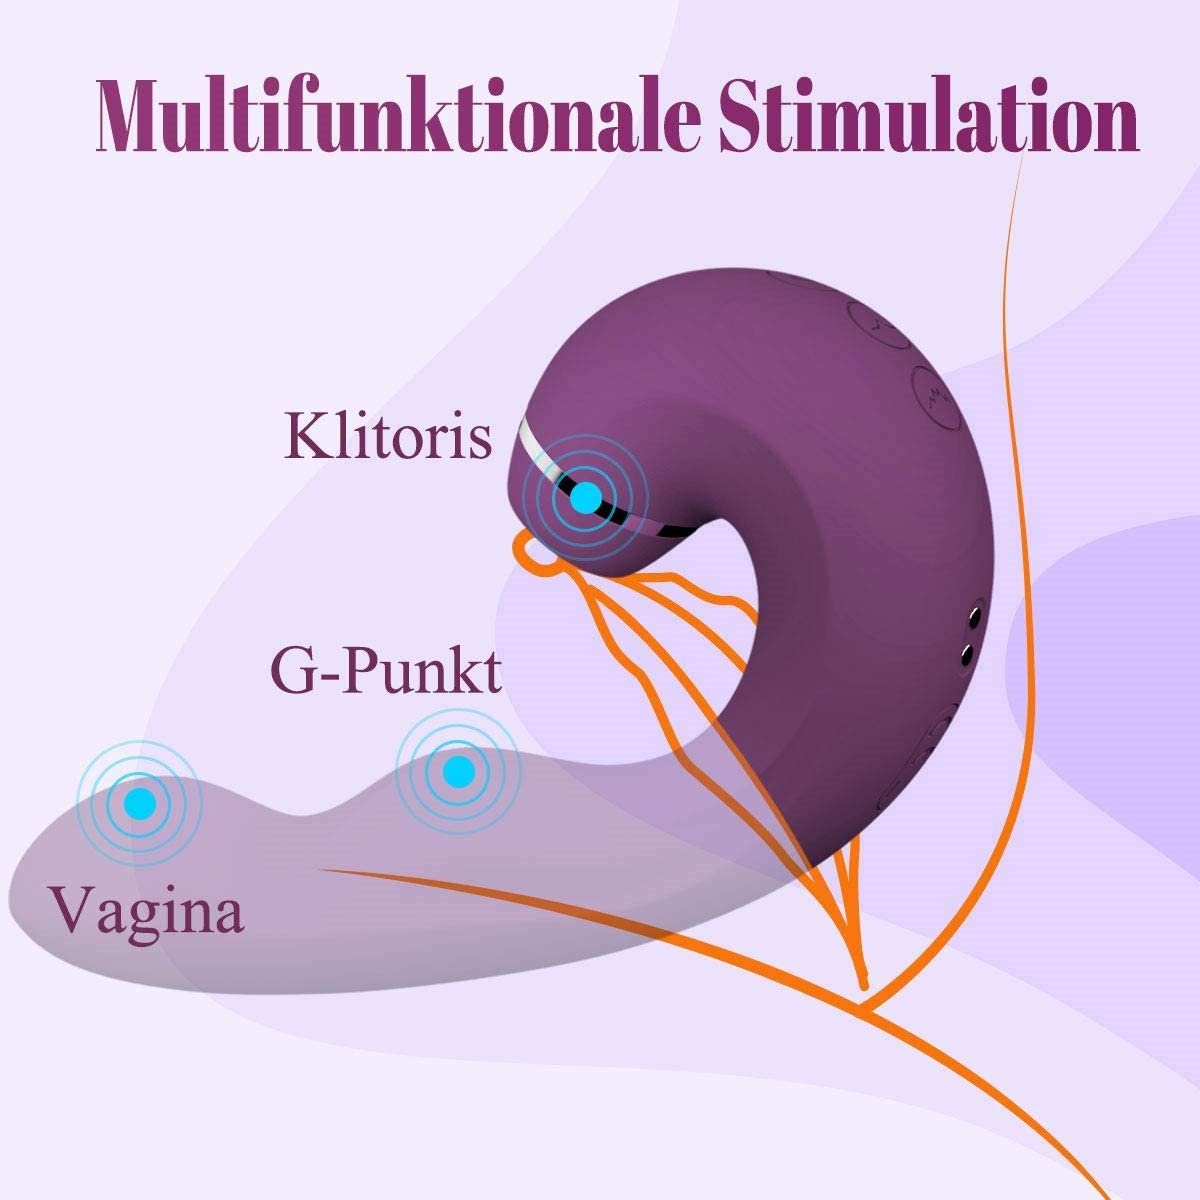 Klitoris G-punkt,Sexspielzeug Vibrator mit Frauen, Pulsation-Vibrationsmodi Zungenlecken für Sie 5-10 und Analvibrator für Saugen autolock pink Vibratoren